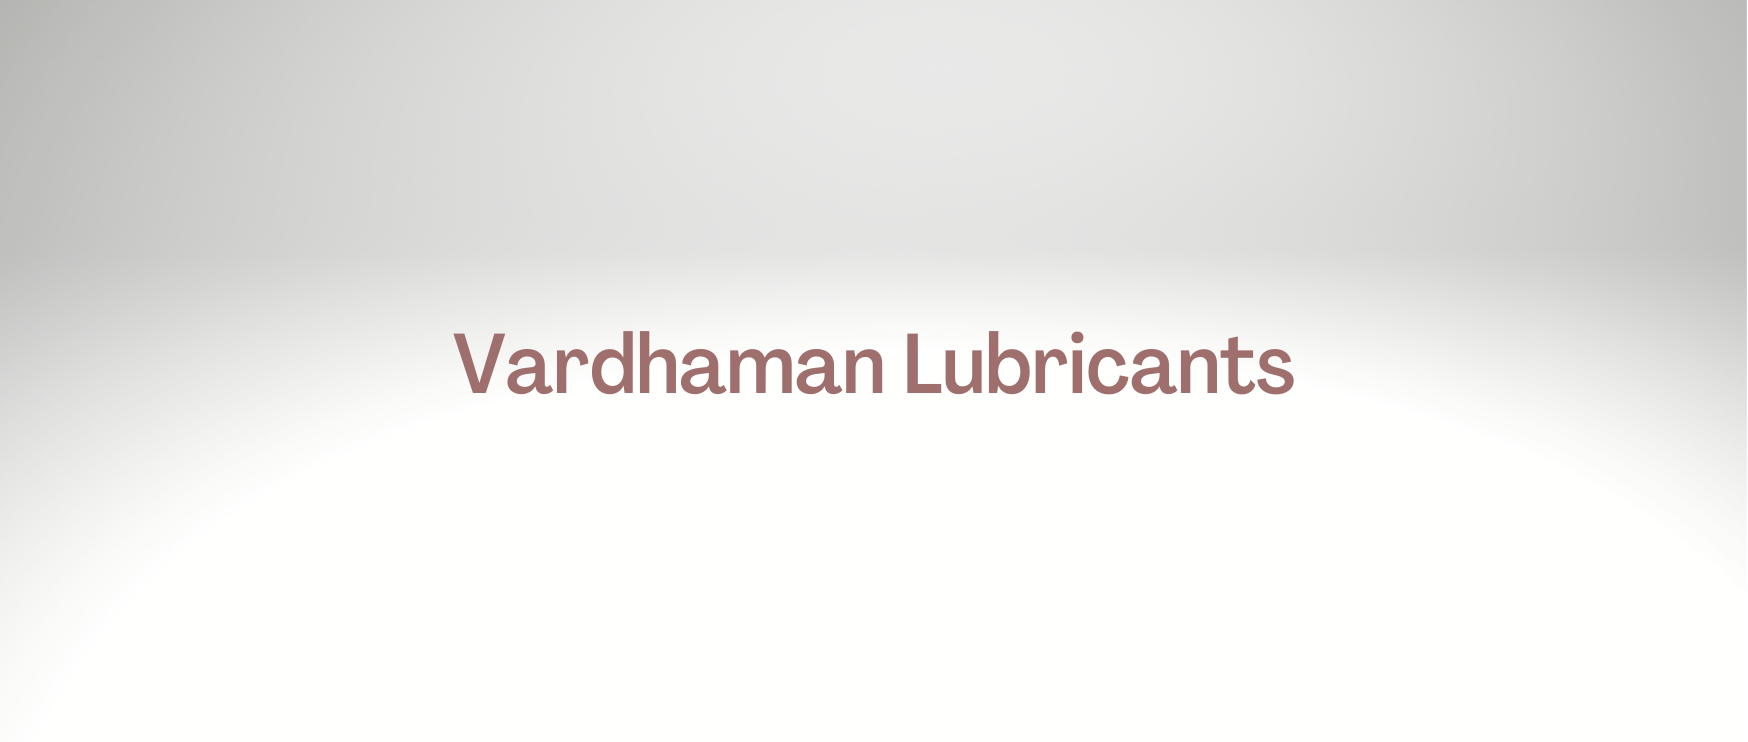 Vardhaman Lubricants